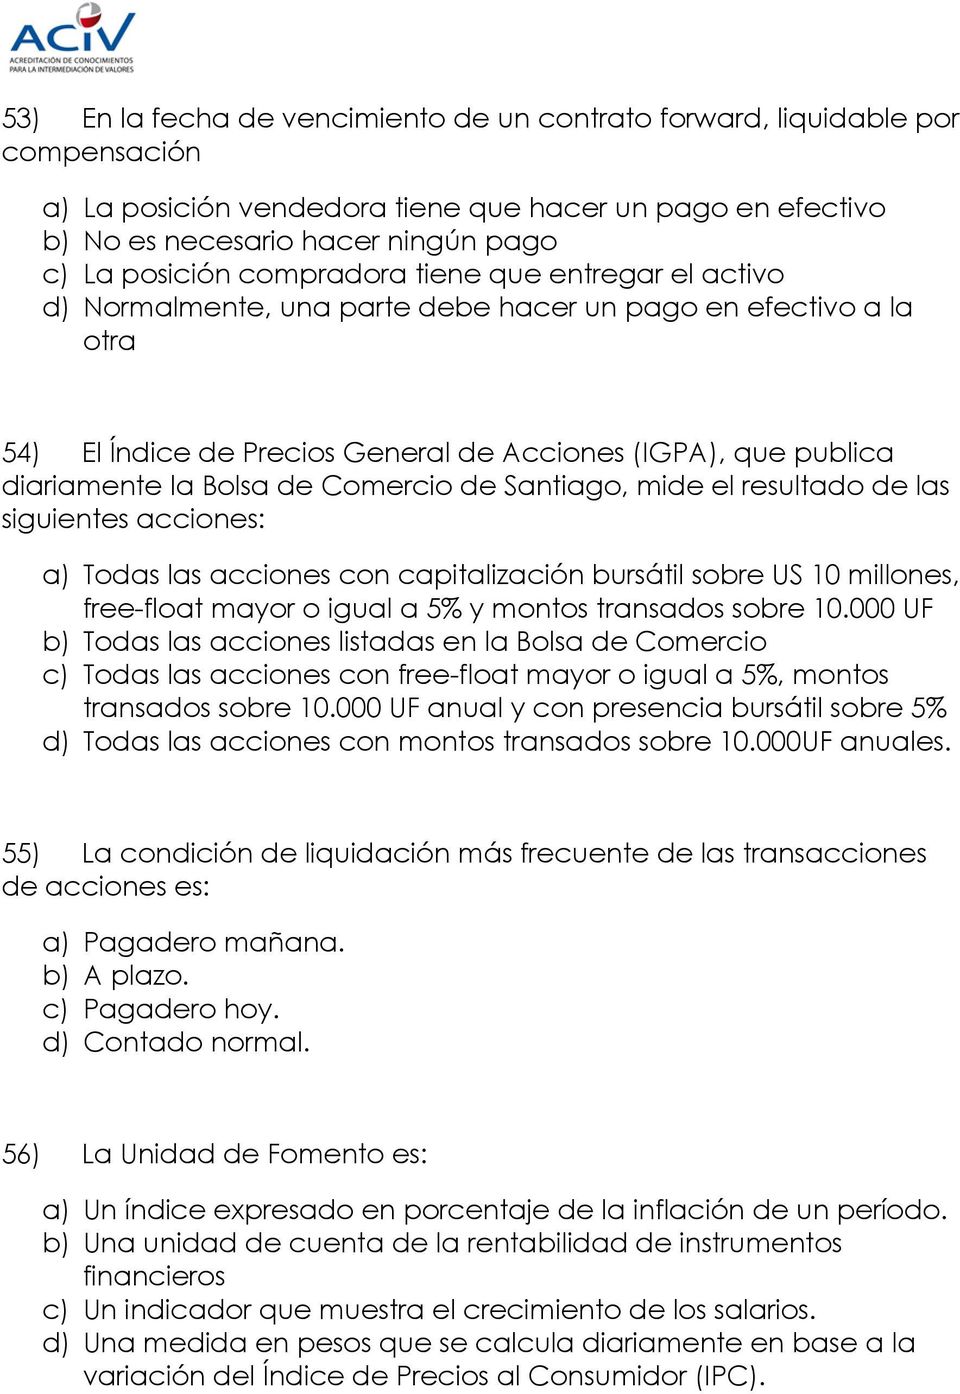 Comercio de Santiago, mide el resultado de las siguientes acciones: a) Todas las acciones con capitalización bursátil sobre US 10 millones, free-float mayor o igual a 5% y montos transados sobre 10.